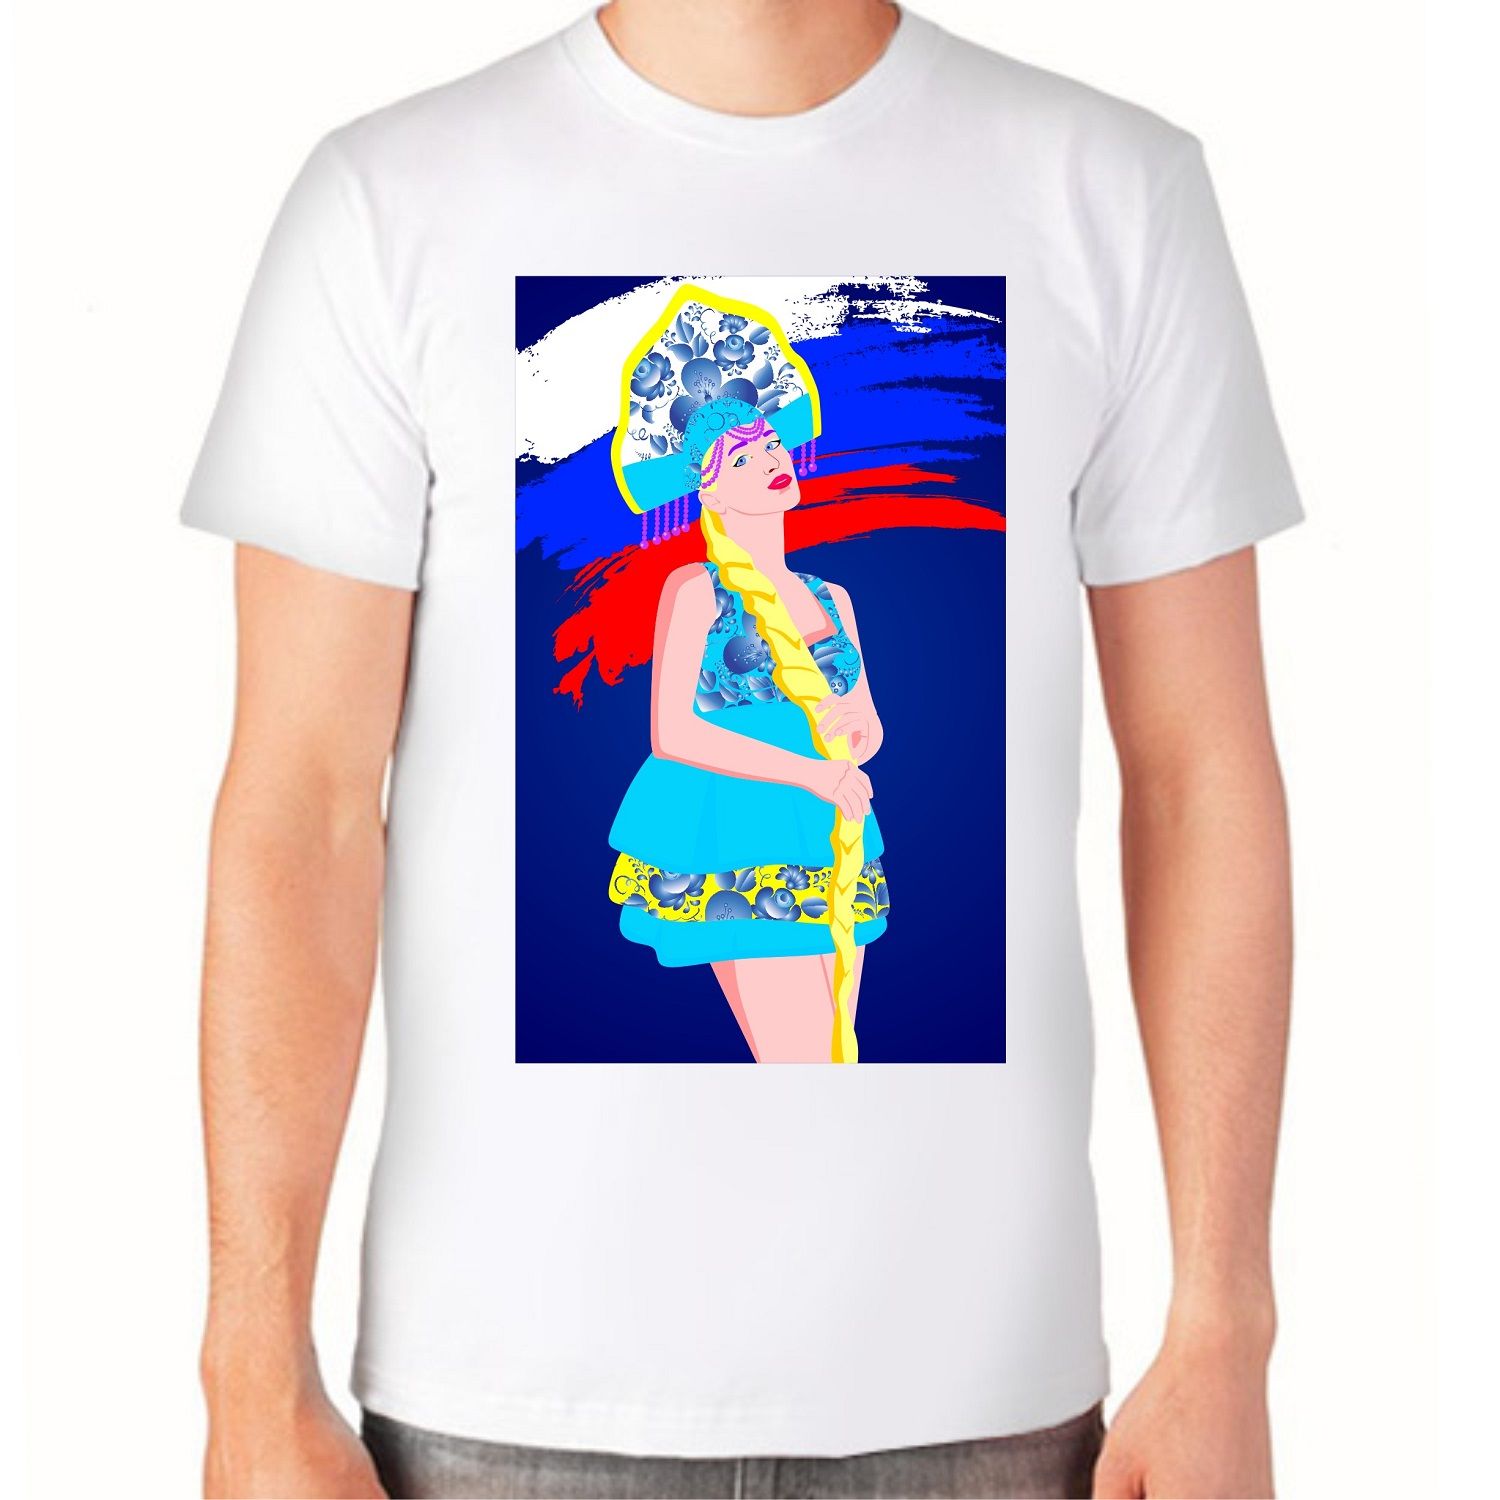 Дизайн футболок для проекта Патриот - дизайнер Korolevisha